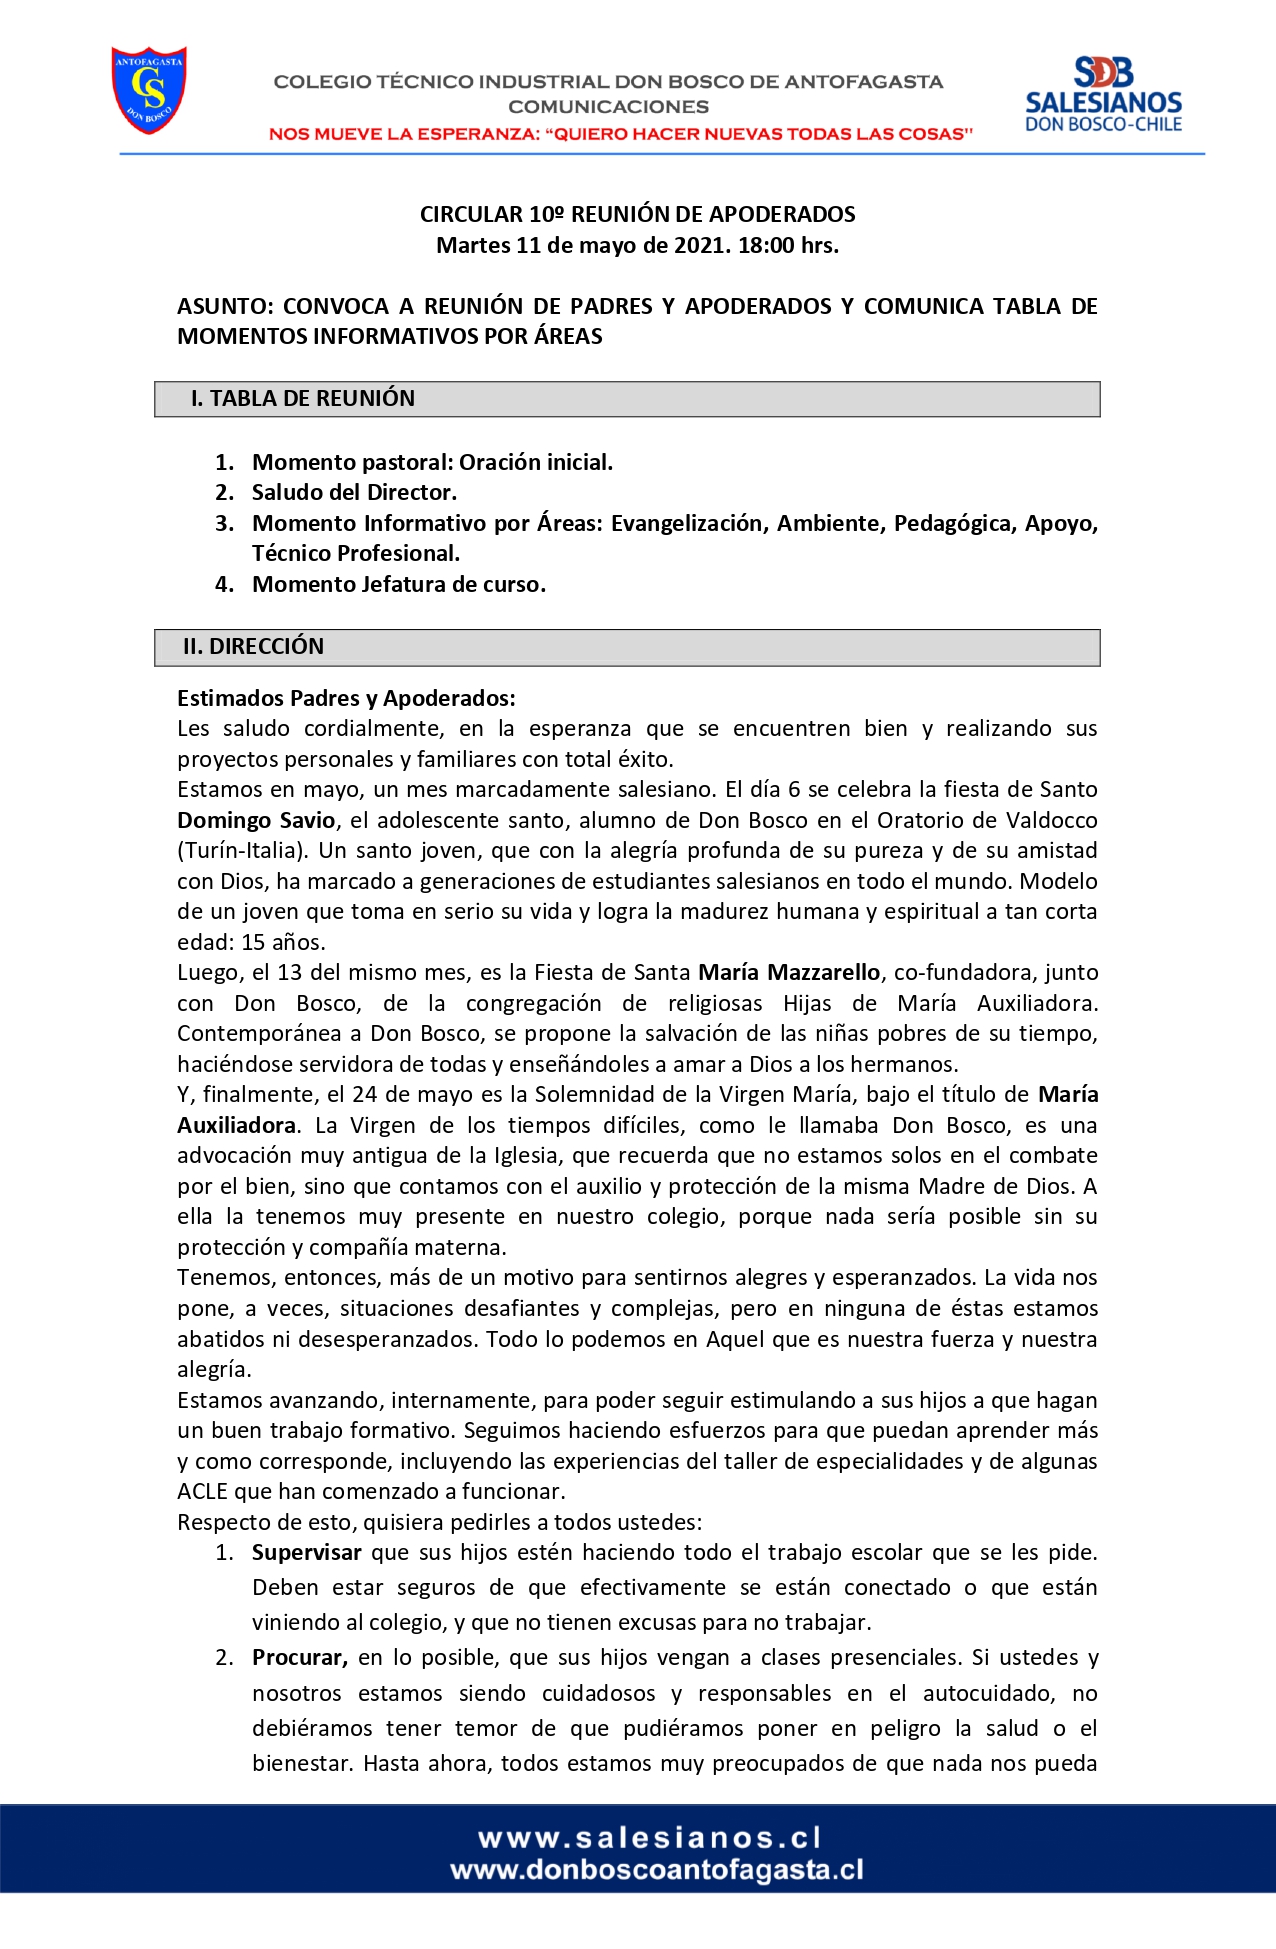 CIRCULAR Nº10 INFORMA REUNIÓN DE PADRES Y APODERADOS 11 DE MAYO DE 2021. page 0001